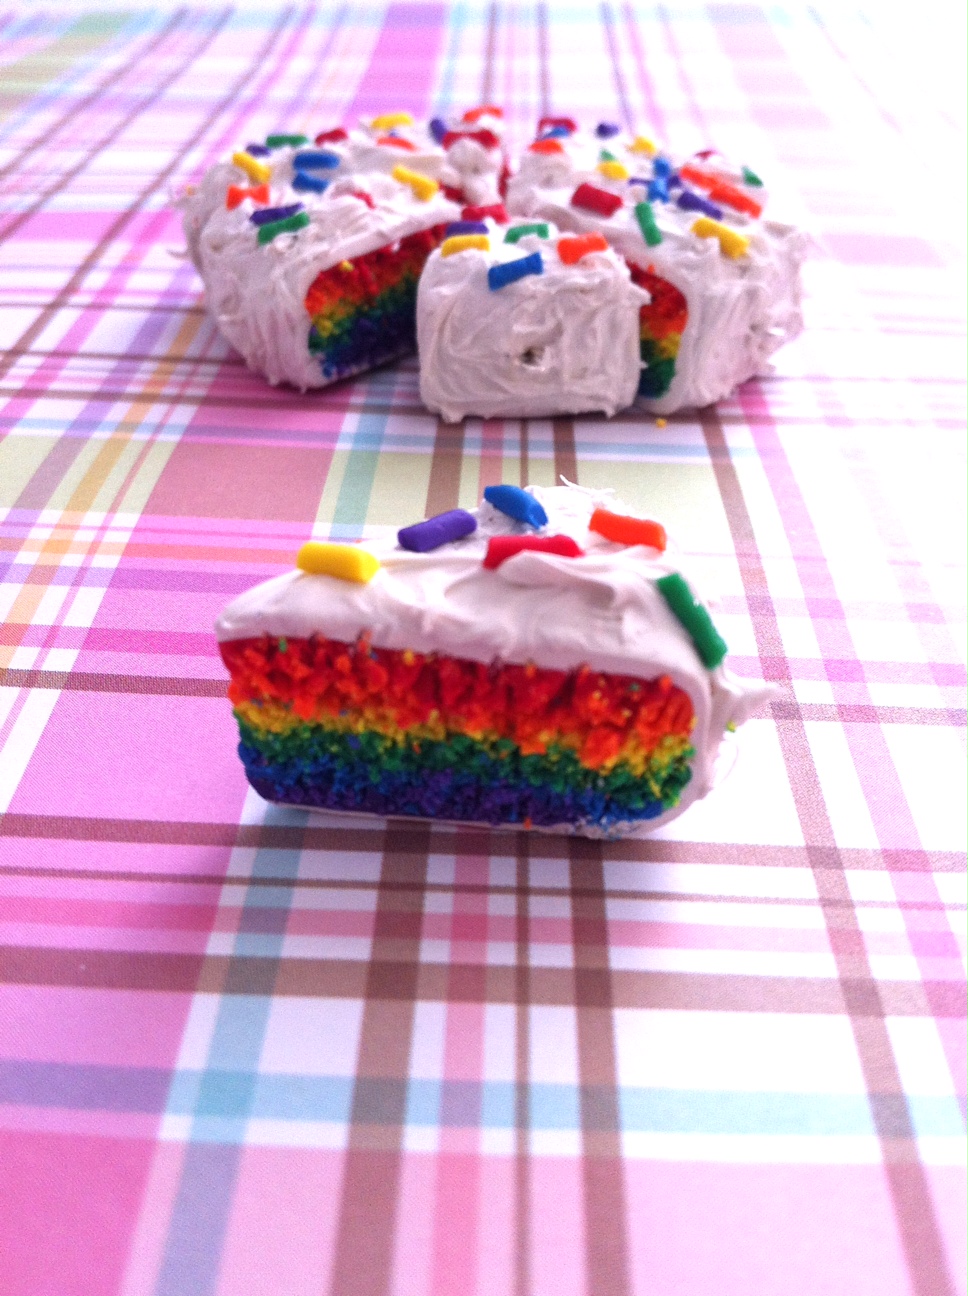 Rainbow Cake by CrazyForJapan123